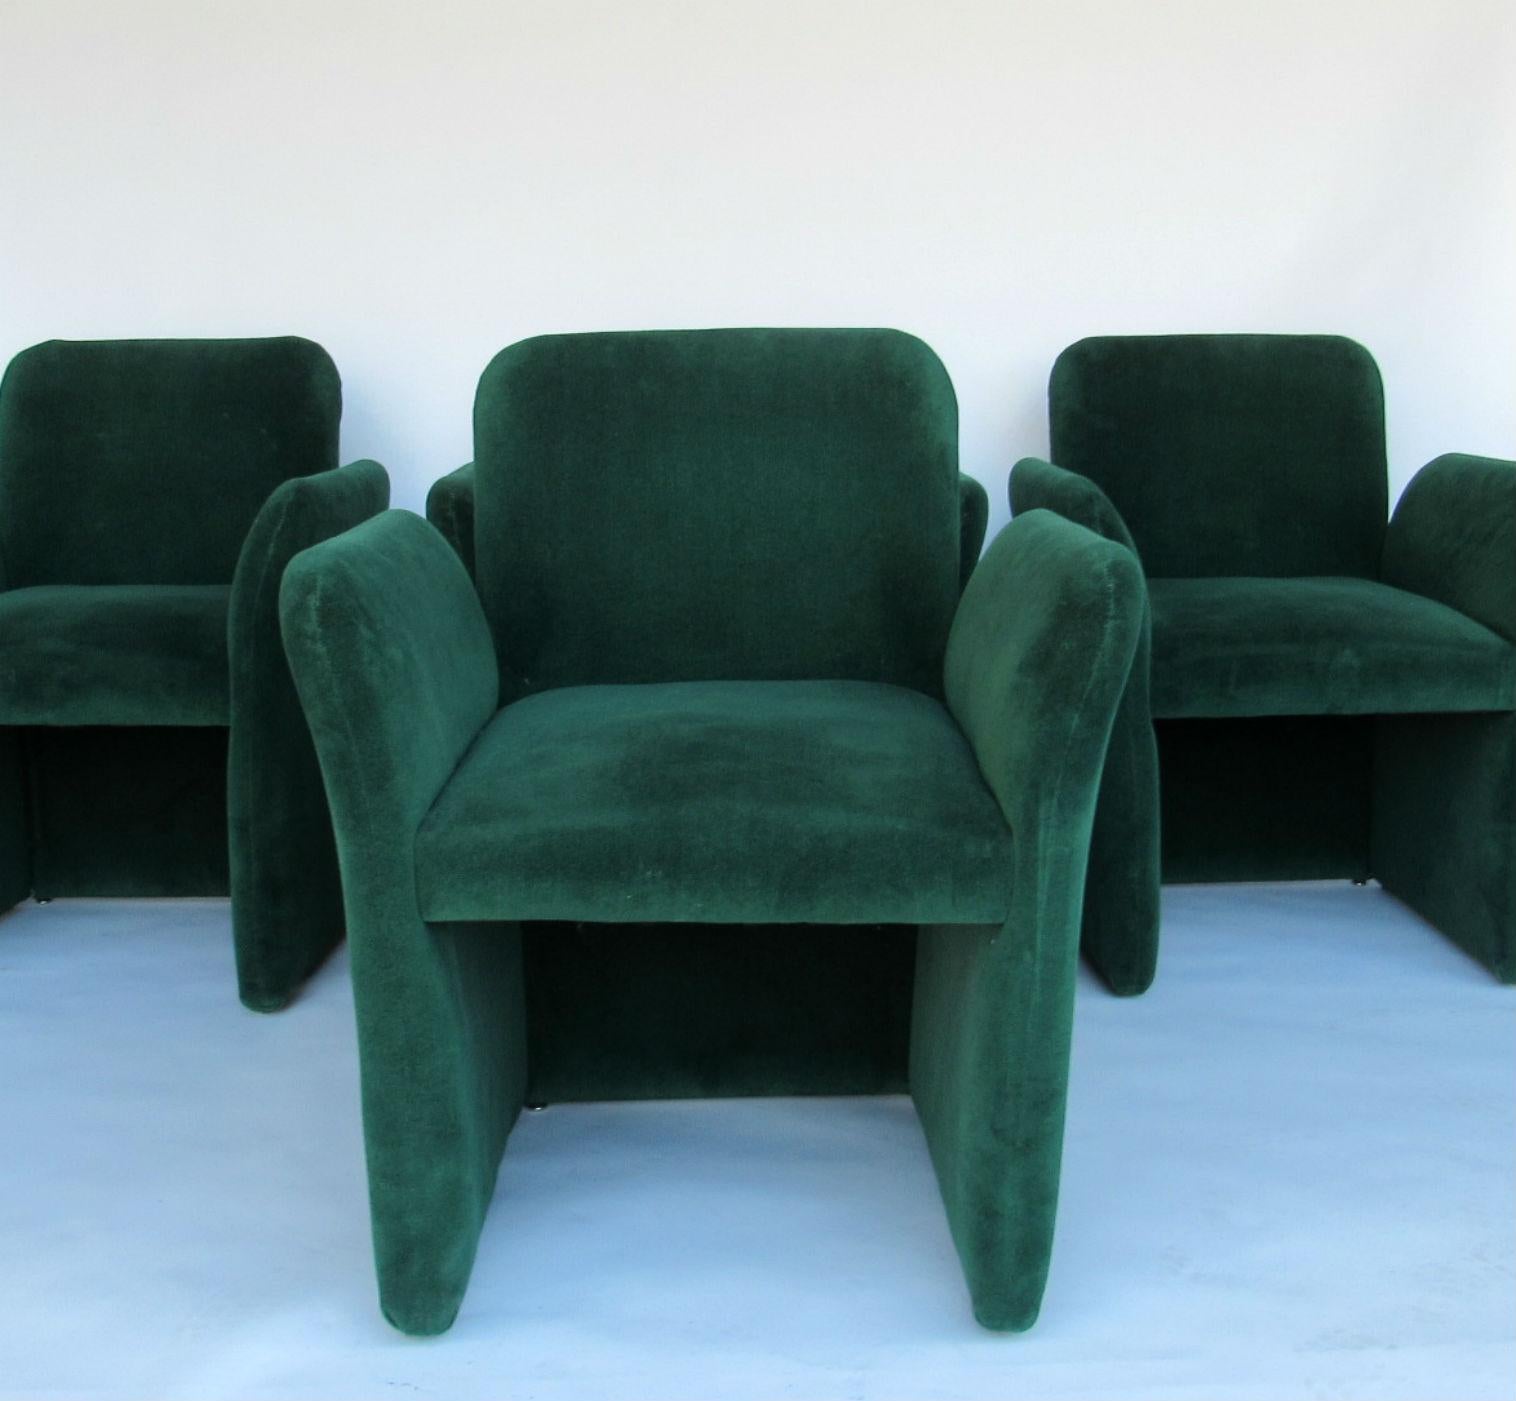 Upholstery Emerald Green Velvet Upholstered Armchairs by Leon Rosen for Pace 1980s